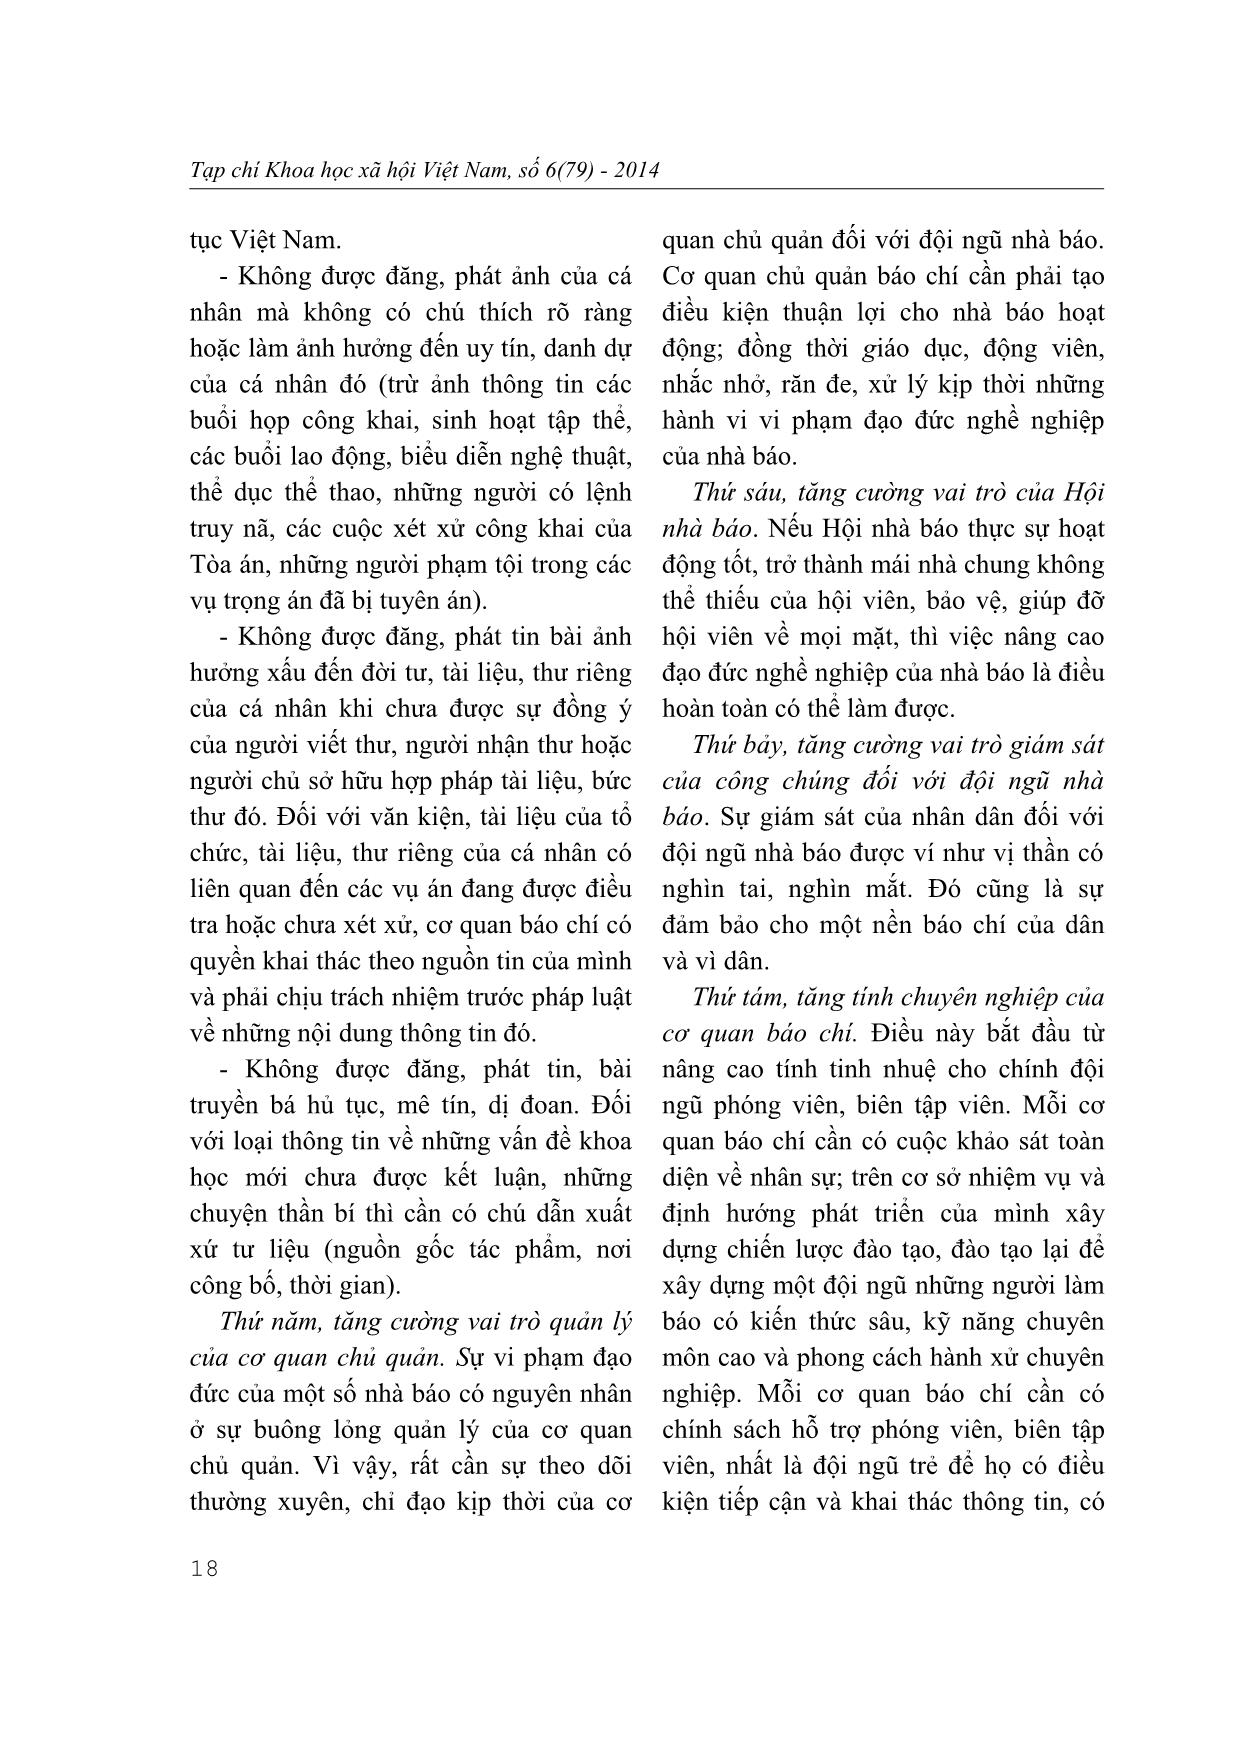 Nâng cao đạo đức nhà báo theo tư tưởng Hồ Chí Minh trang 9